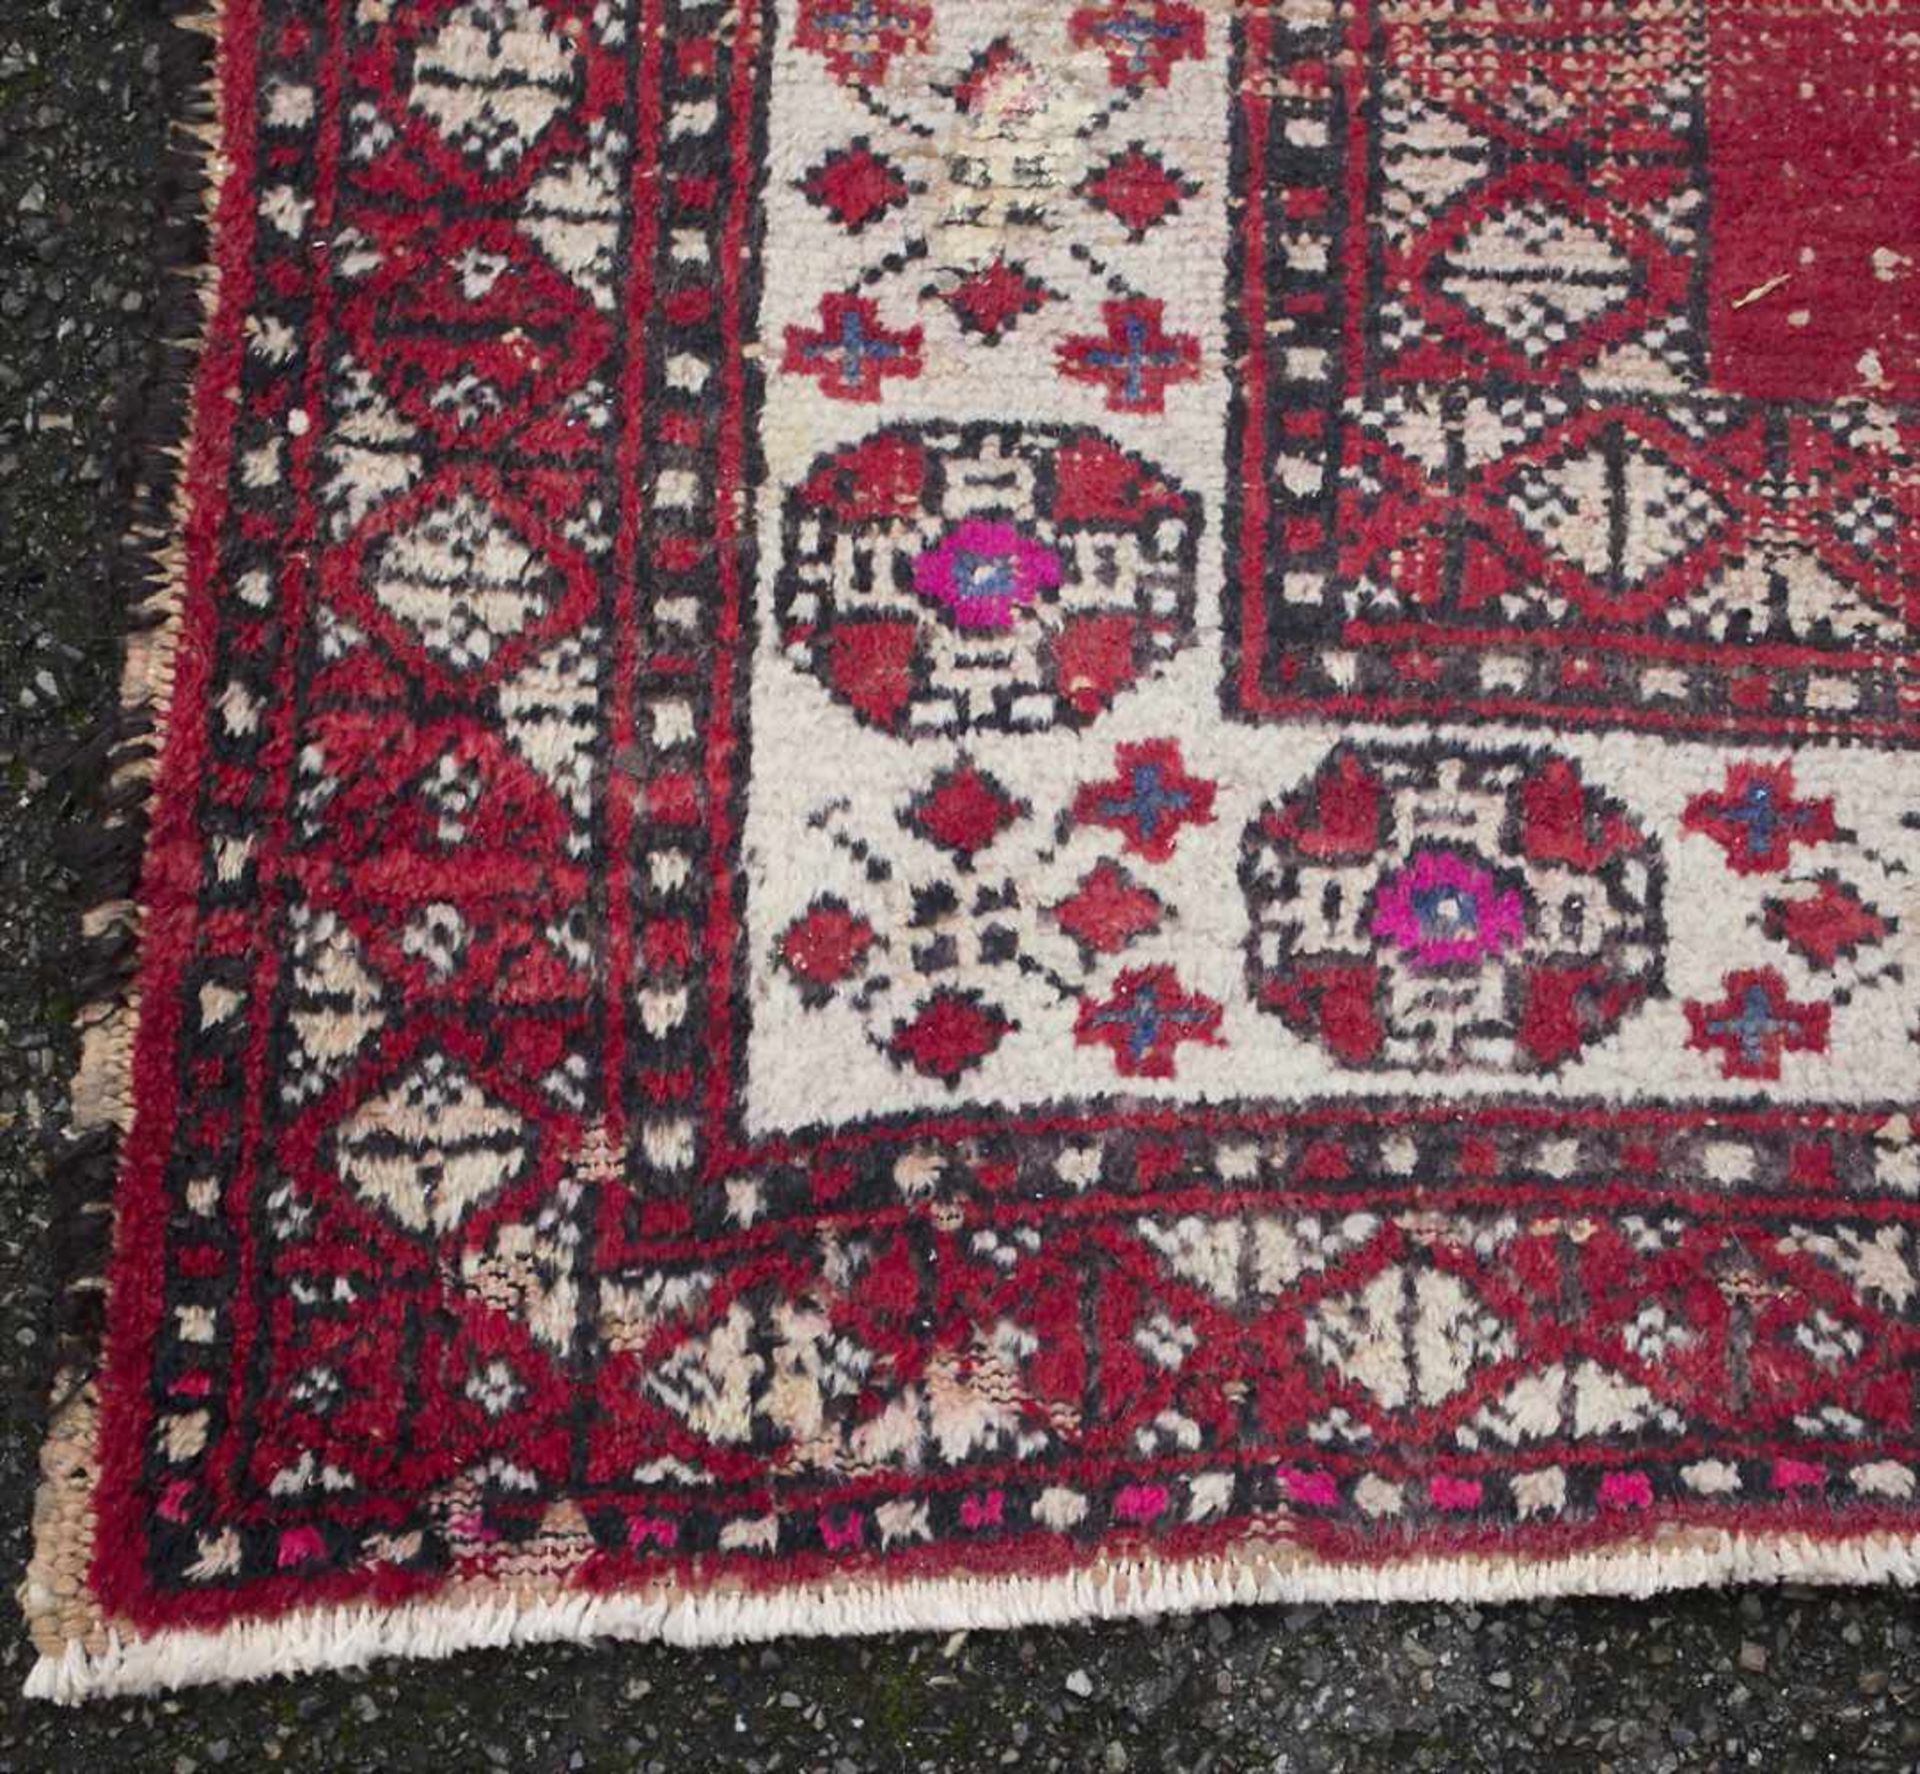 Orientteppich / An oriental carpetMaterial: Wolle auf Baumwolle, Maße: 208 x 122 cm, Zustand: - Image 4 of 5